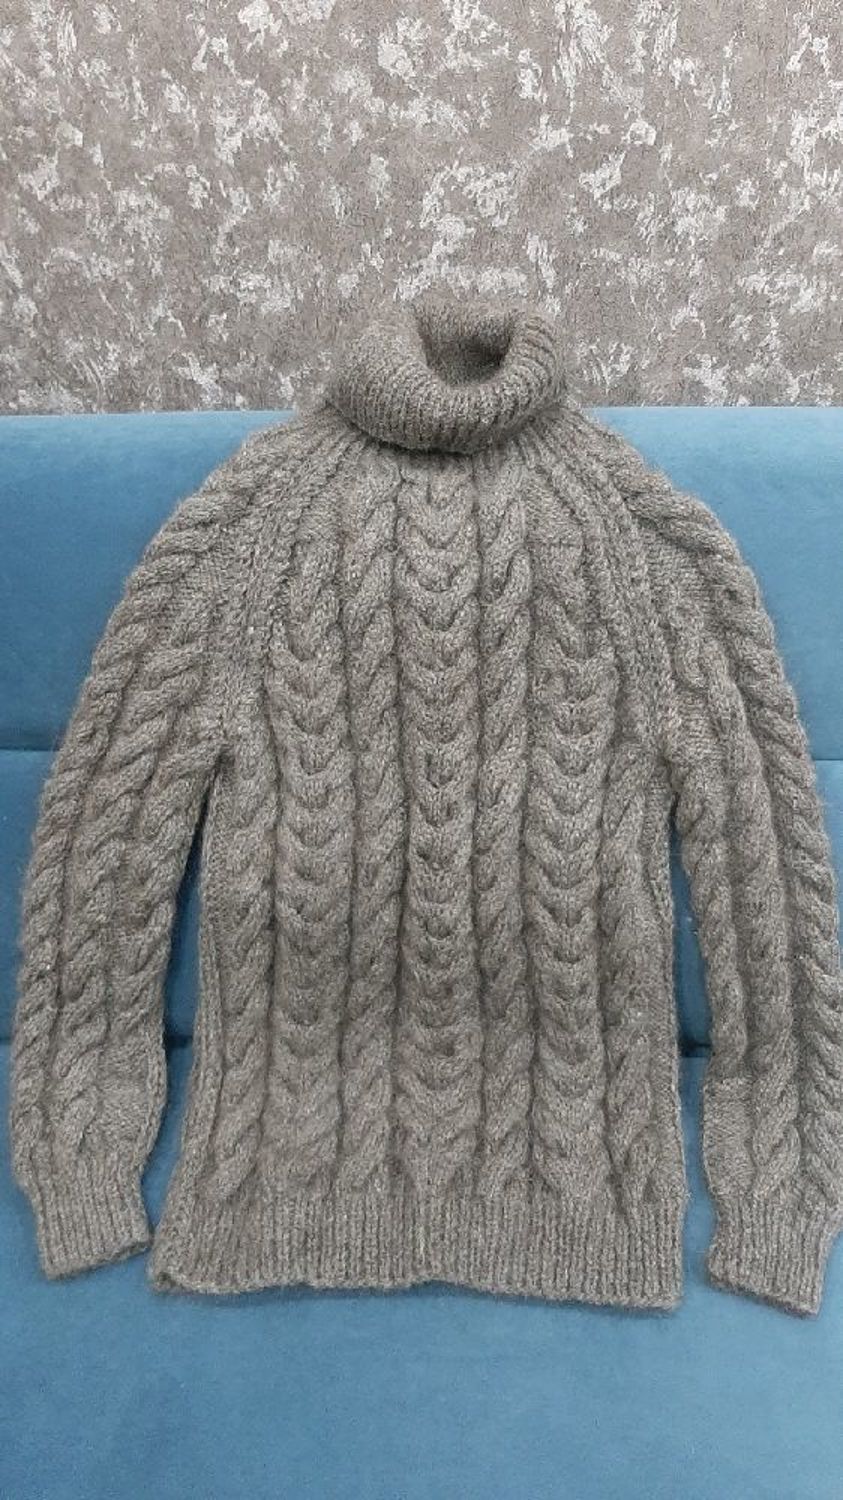 Photo №1 к отзыву покупателя Sofya Sulim о товаре Пуховый свитер ручной работы